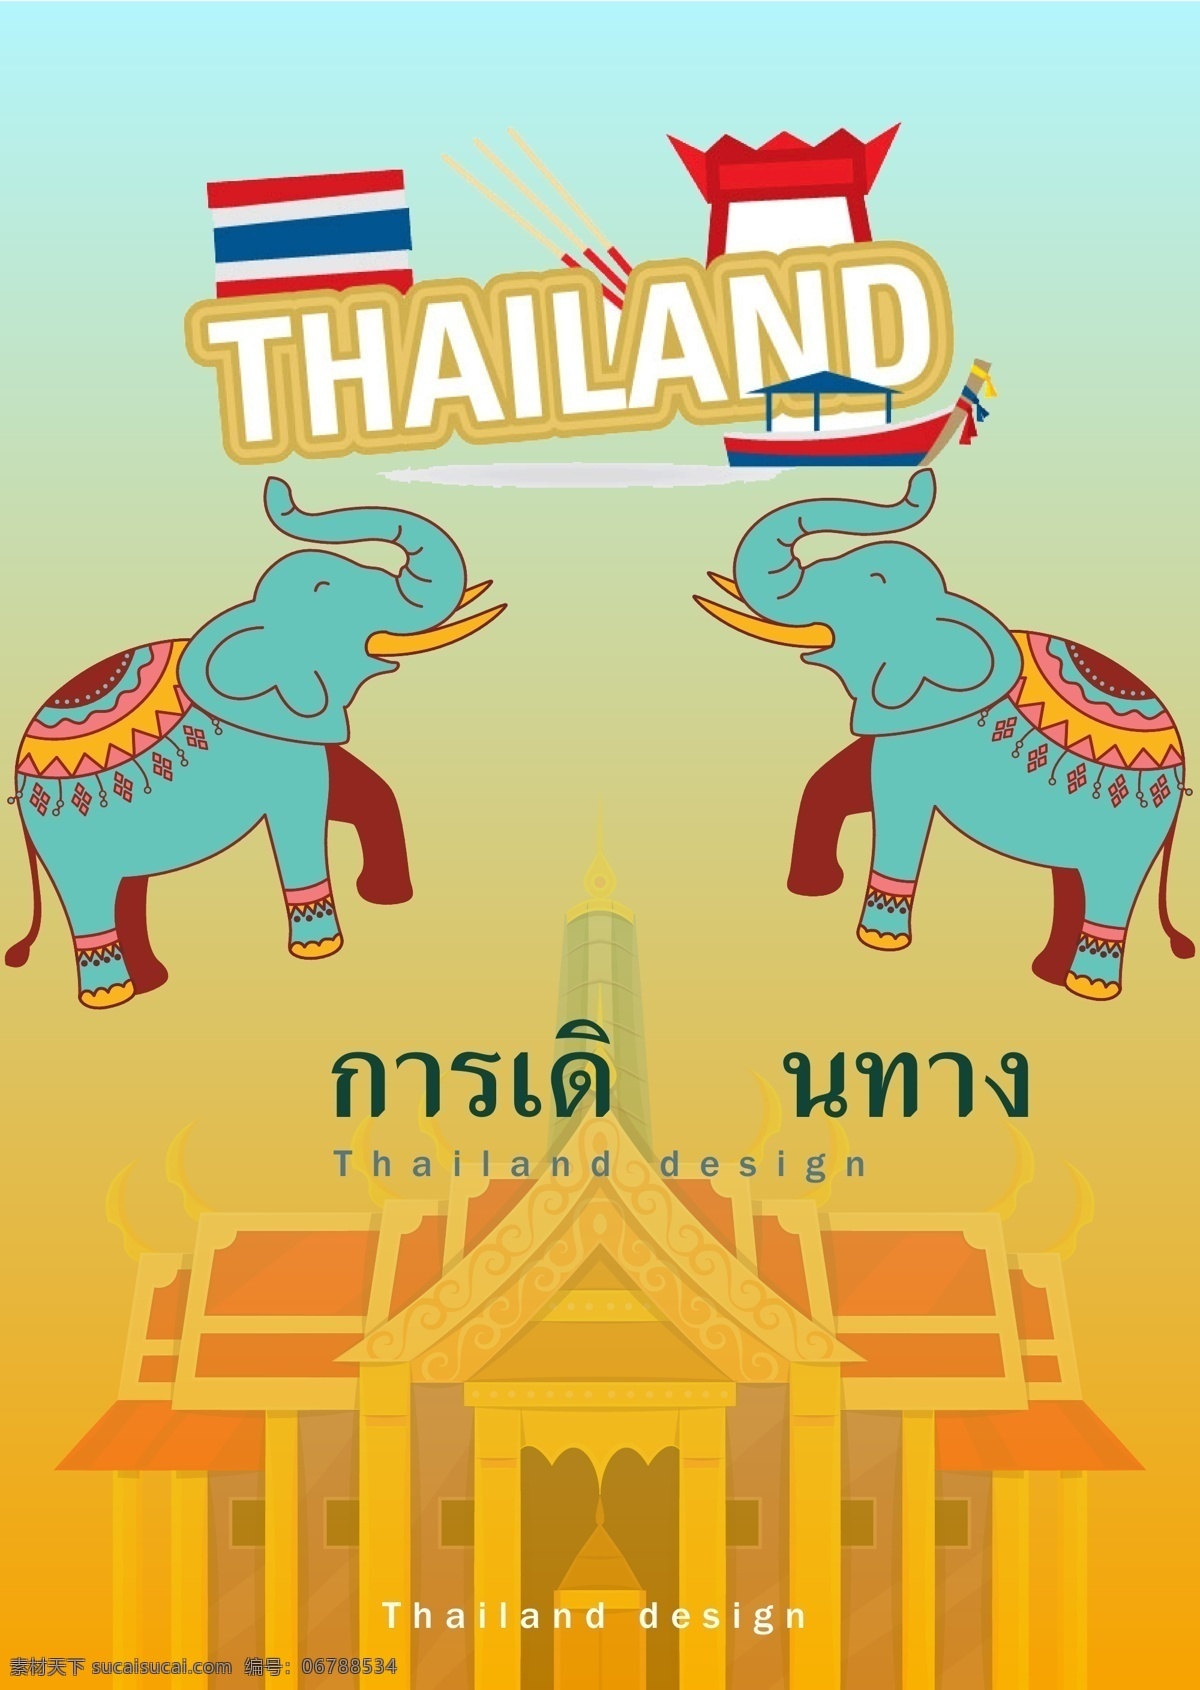 动画片 泰国 建筑 大象 泰国风格 动物 象 房屋 大皇宫 寺庙 唐人街 泰国的旗子 条纹 风景区 游览 海报